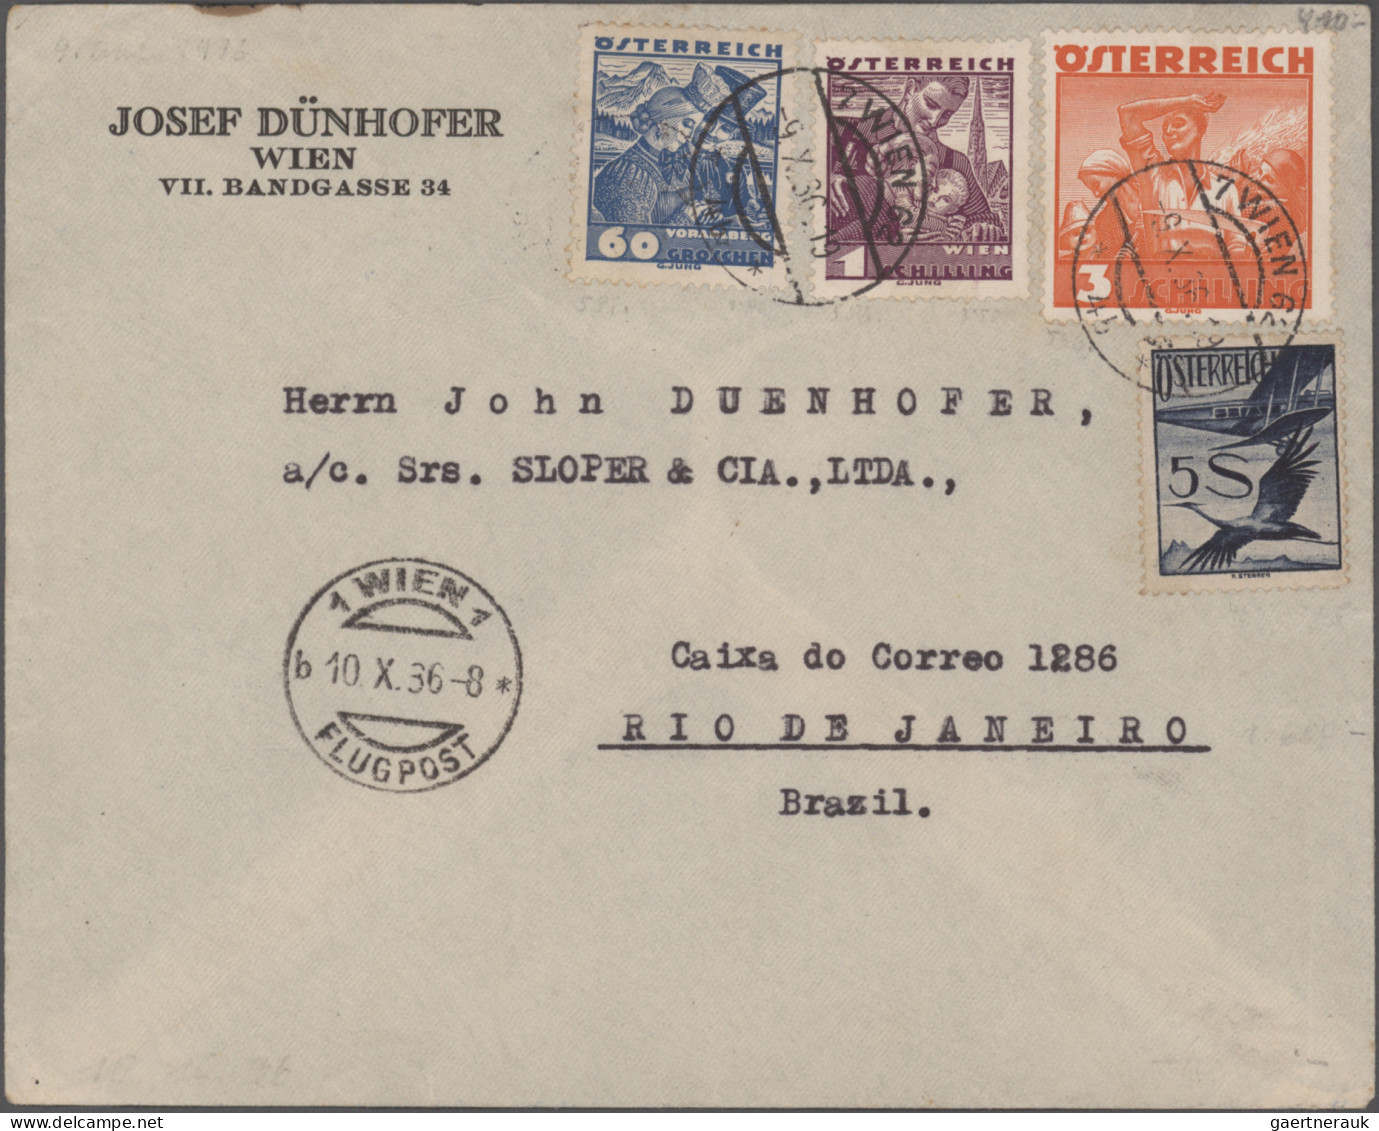 Österreich - Flugpost: 1922/1962, Sammlung von 41 Flugpostbelegen (rs. meist mit